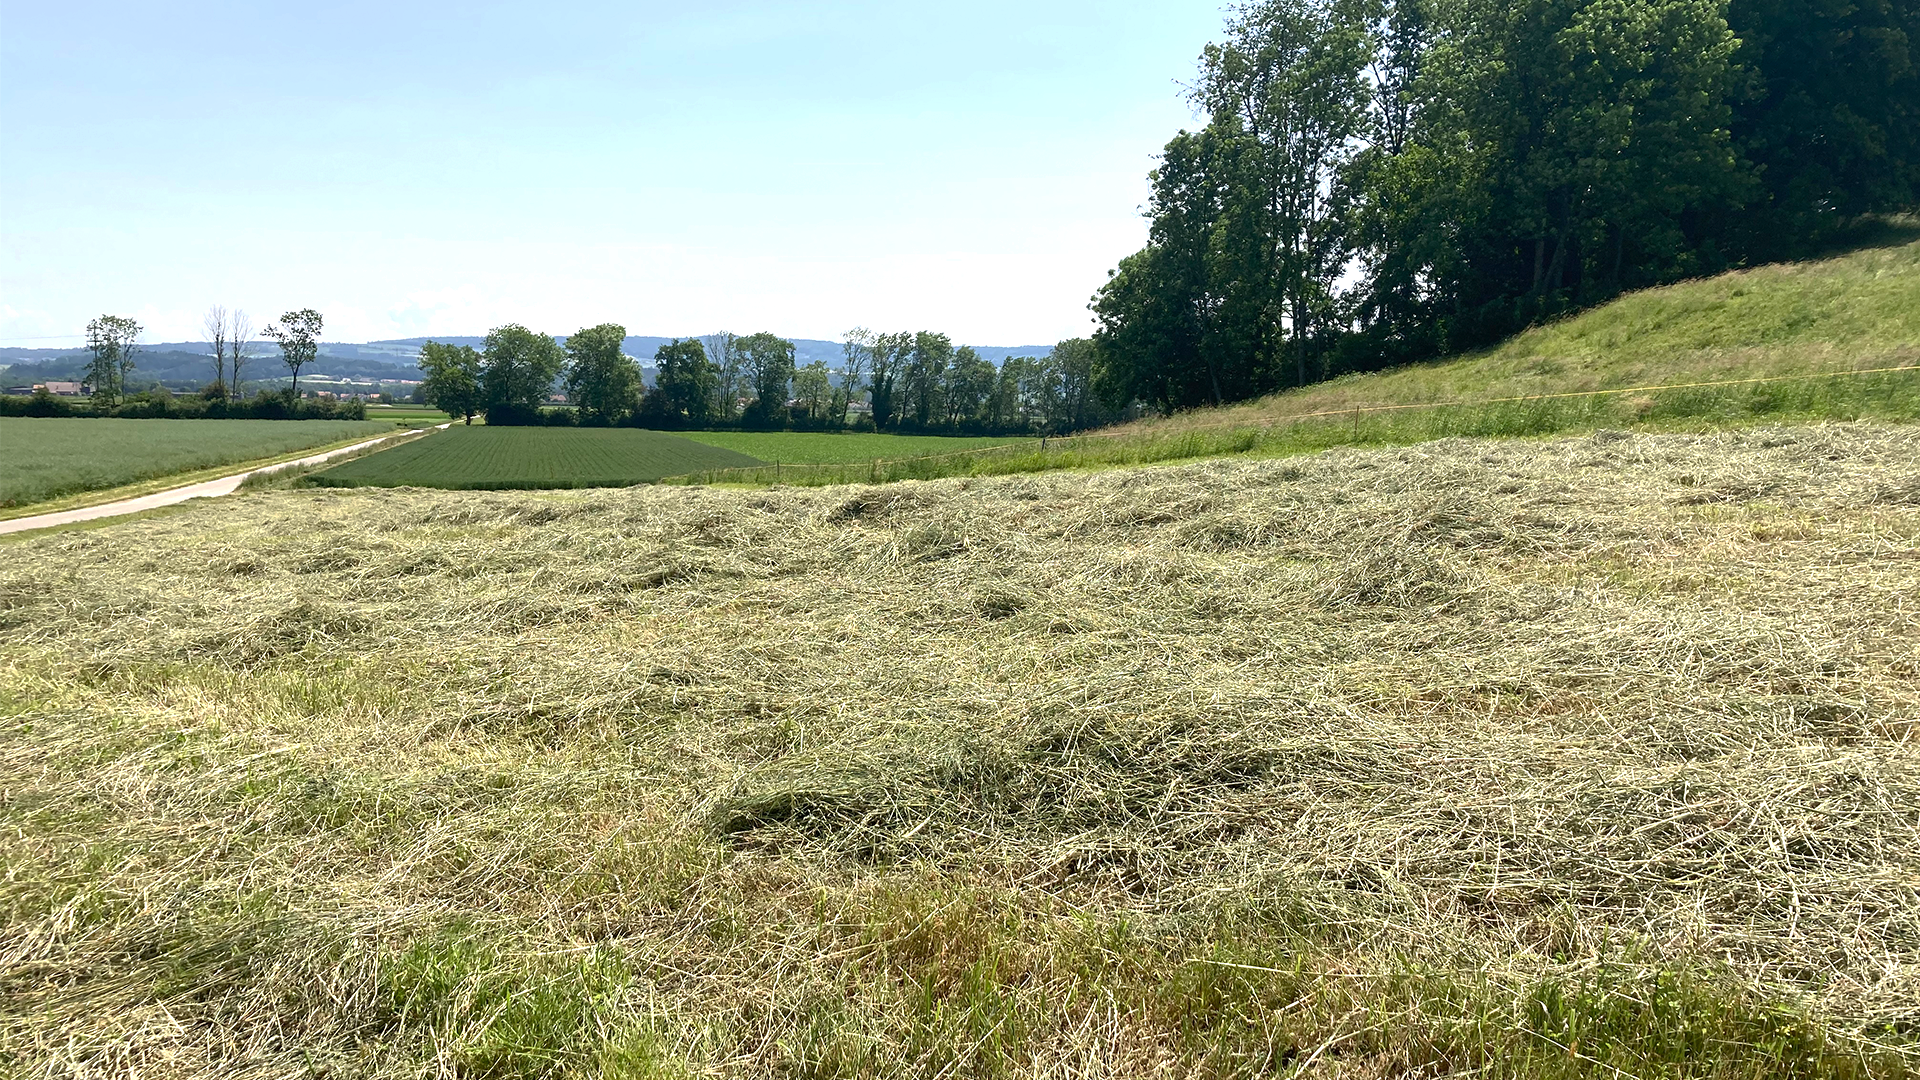 Das Gras wird gemäht und an möglichst sonnigen, regenfreien Tagen zum Trocknen ausgelegt, ... (Bild: LID)